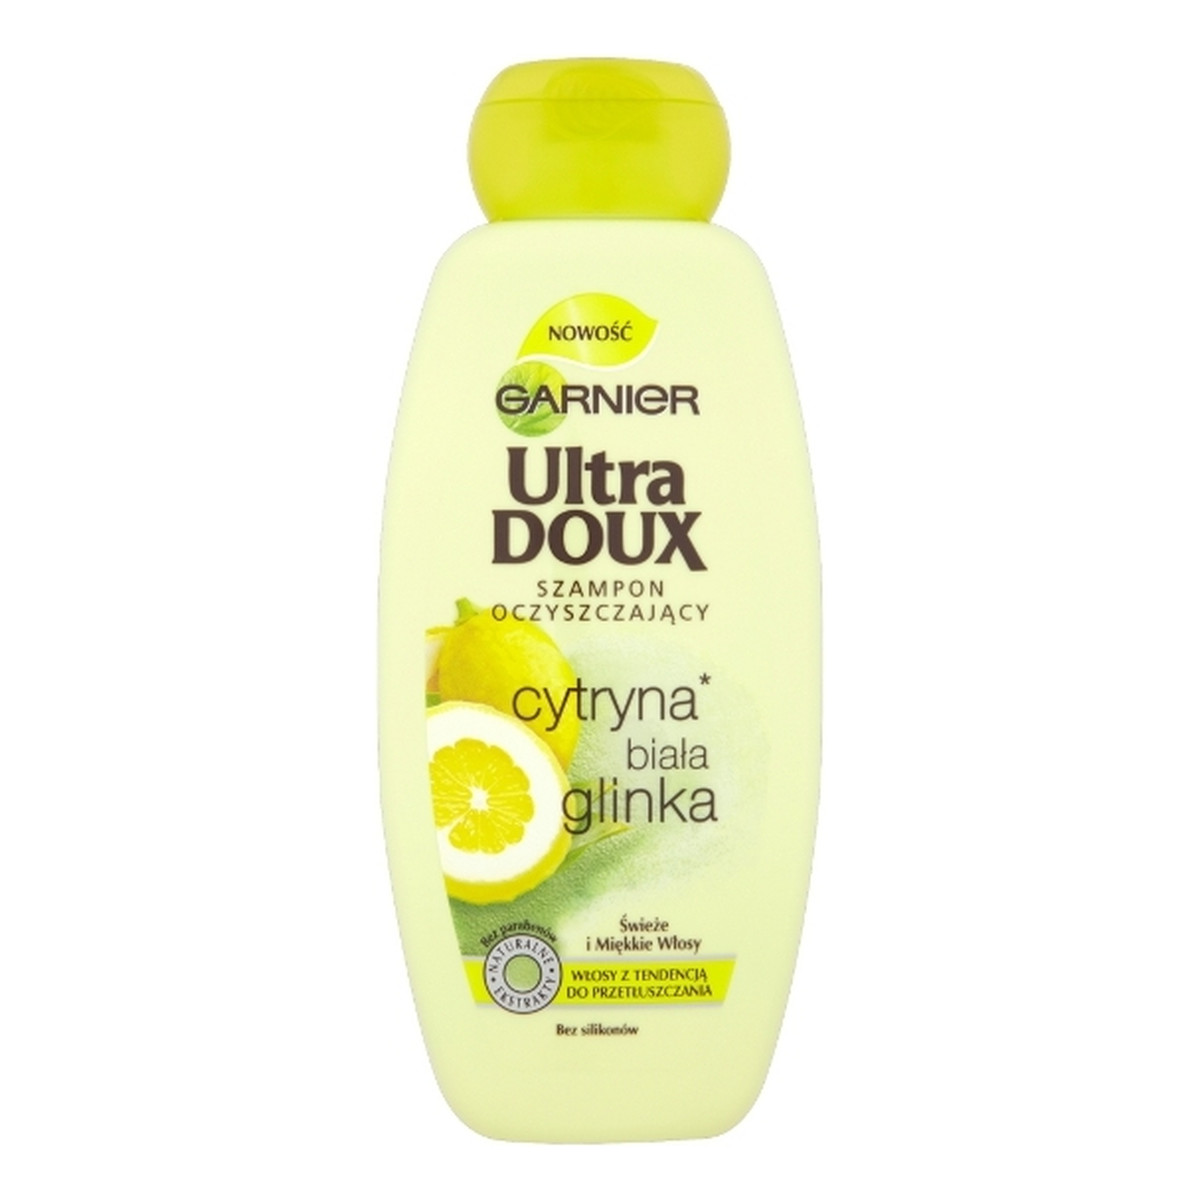 ultra doux szampon do włosów cytryna i biała glinka 400ml